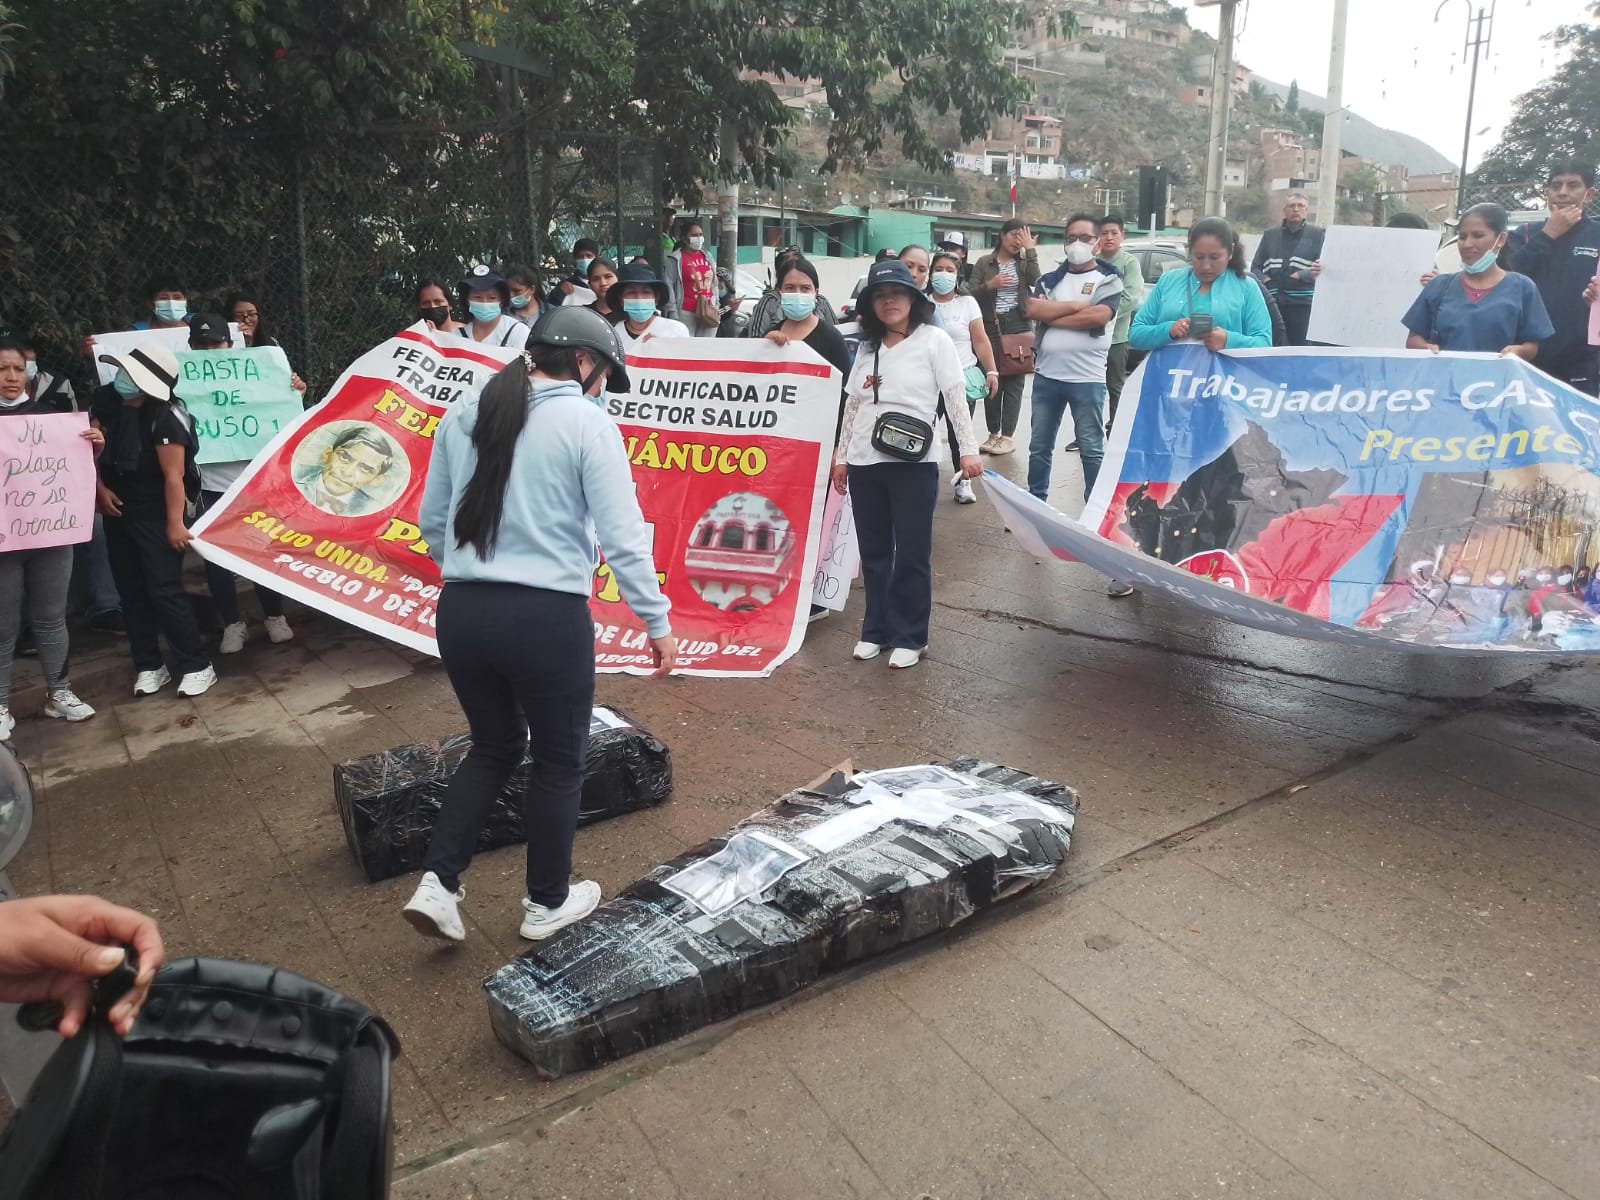 Trabajadores CAS protestan contra amenaza de despidos